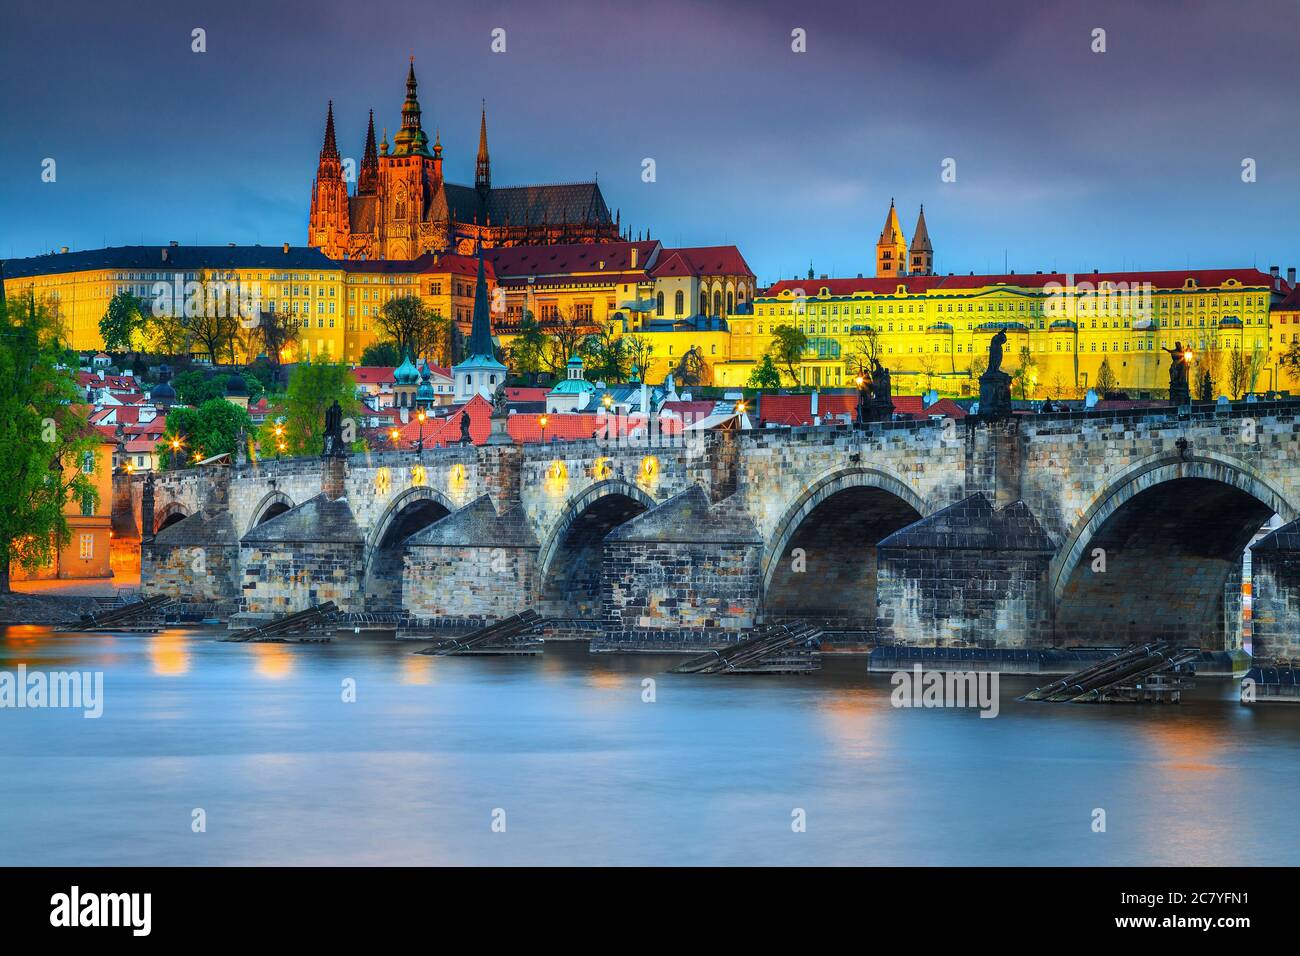 Berühmte Karlsbrücke über die Moldau in Prag am Abend. Erstaunliche Orte und majestätische Gebäude mit bunten Lichtern nach Sonnenuntergang, Prag, Stockfoto